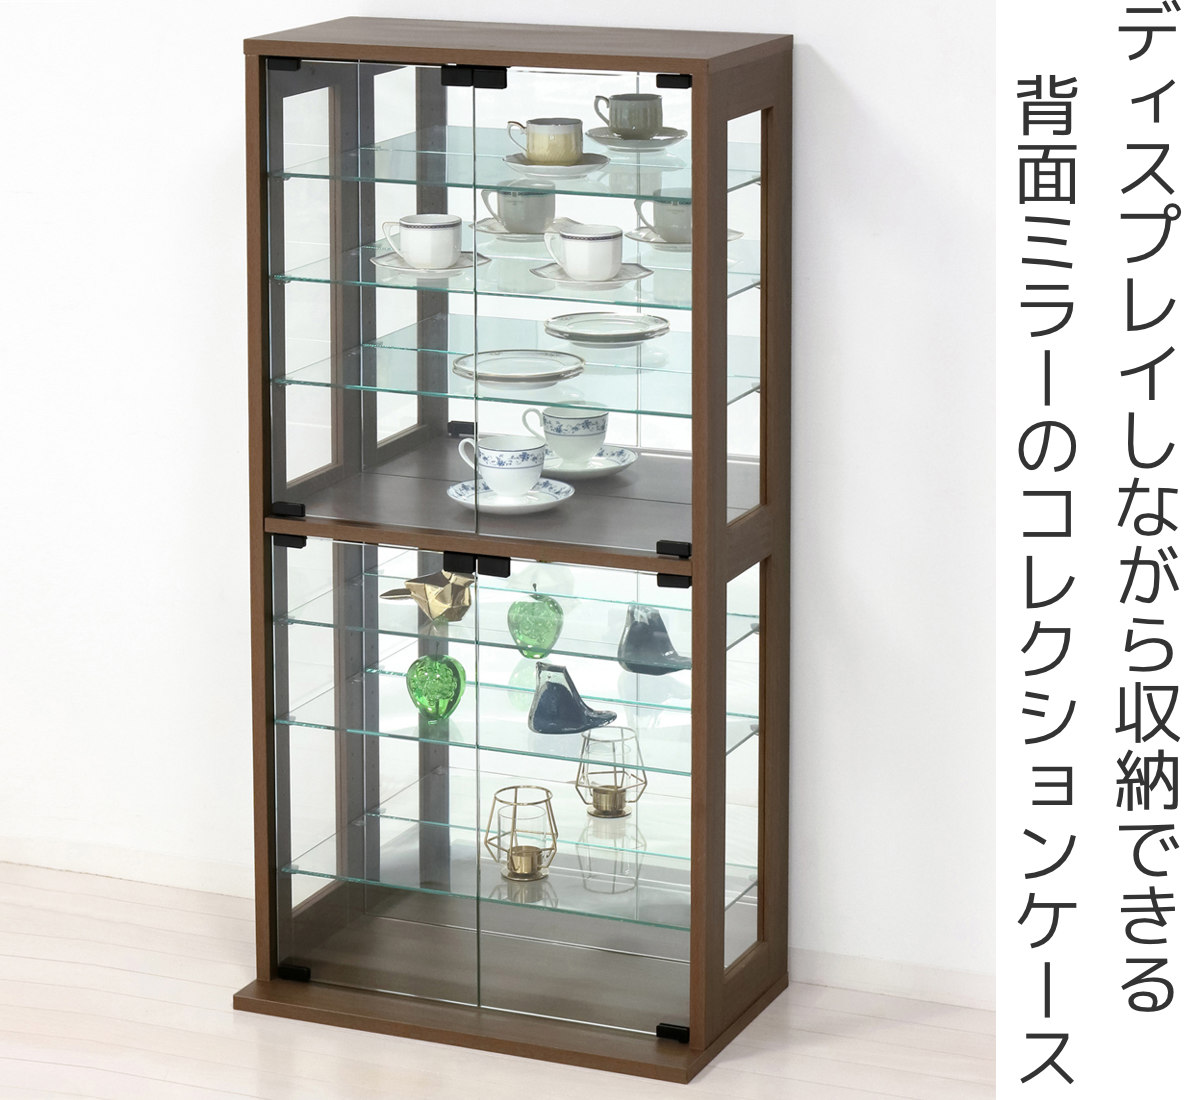 1815【新品ガラス コレクションケース棚 フィギュアケース展示ケース 